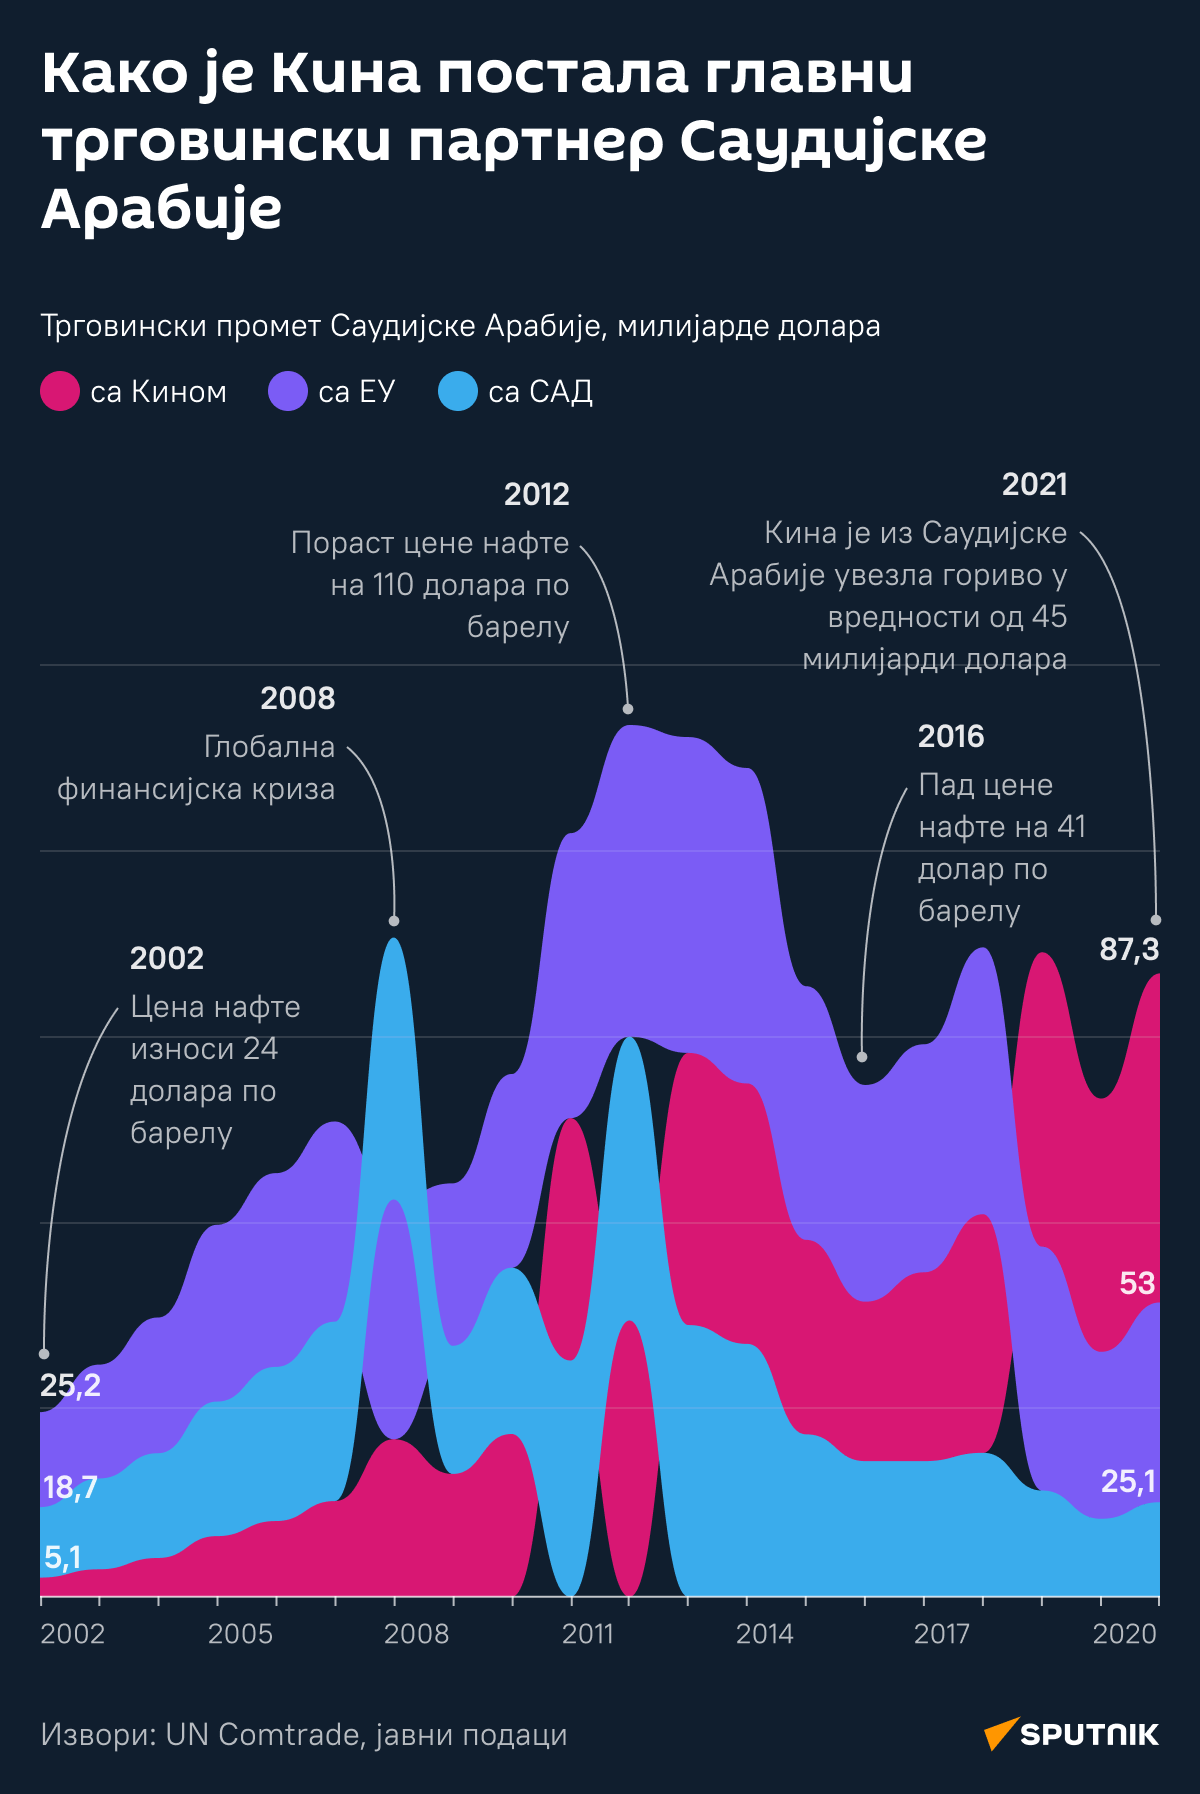 Инфографика Како је Кина постала главни трговински партнер Саудијске Арабије  ЋИРИЛИЦА деск - Sputnik Србија